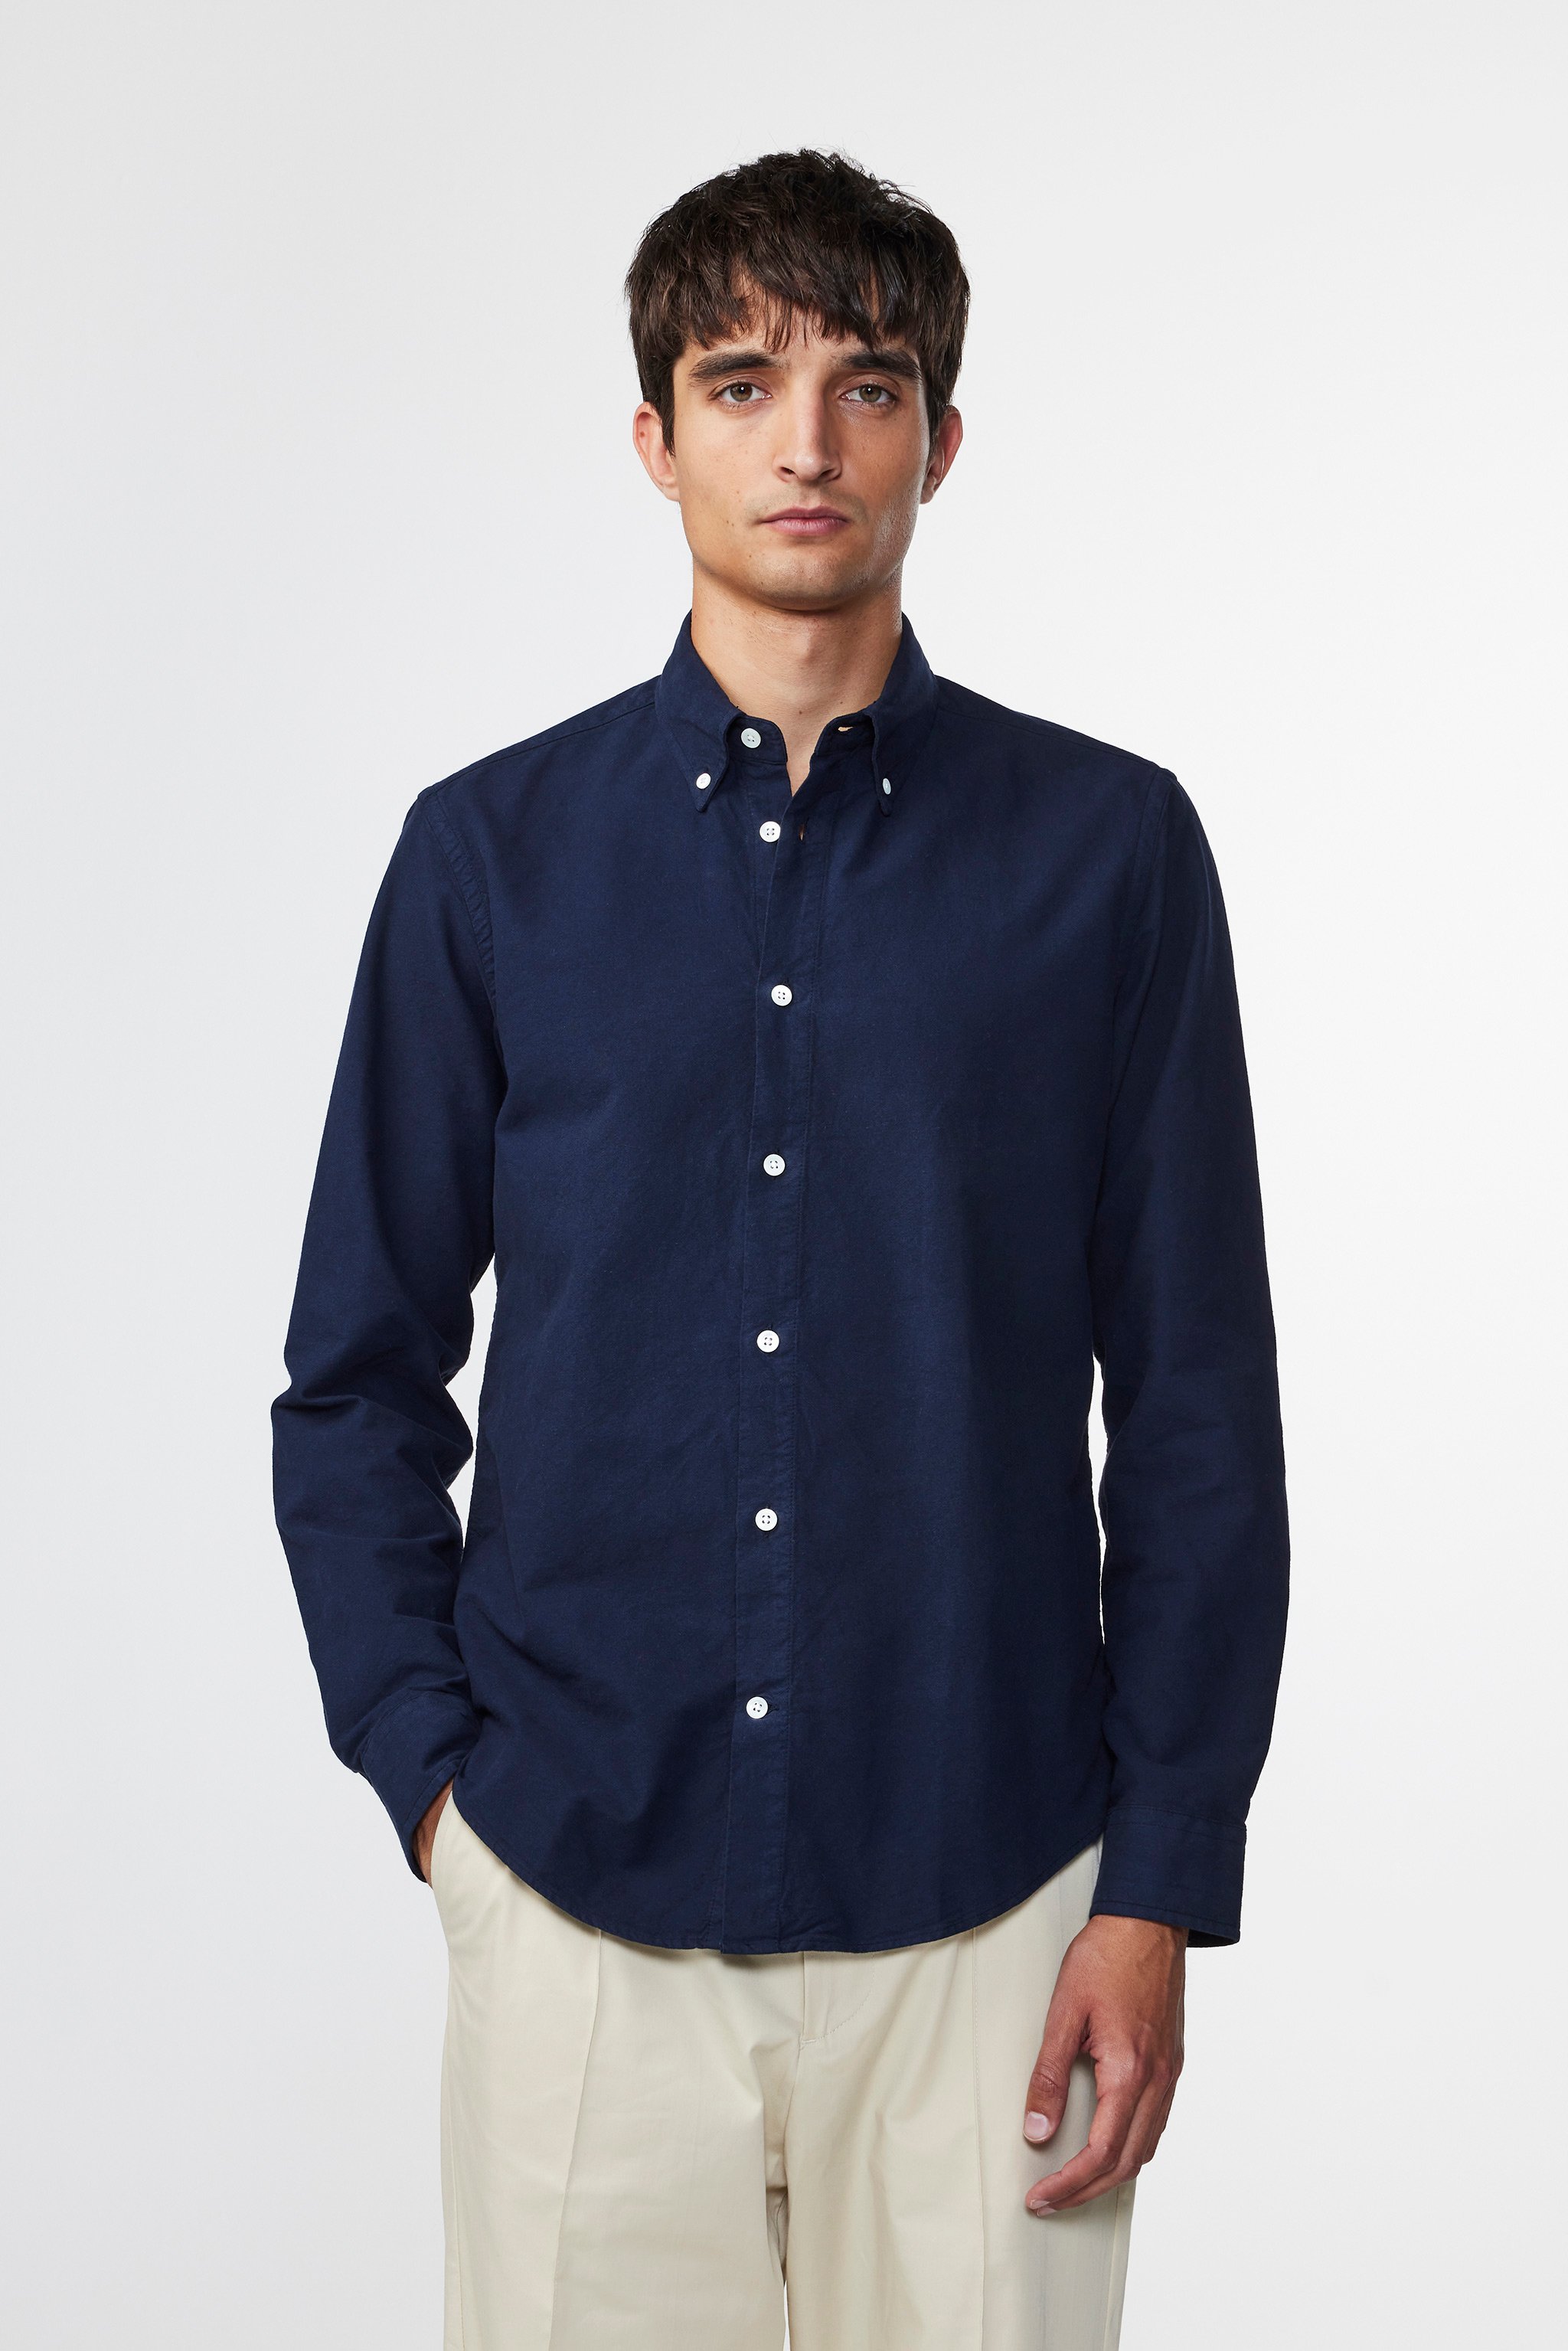 Arne 5725 men's shirt - Blue - Buy online at NN.07®